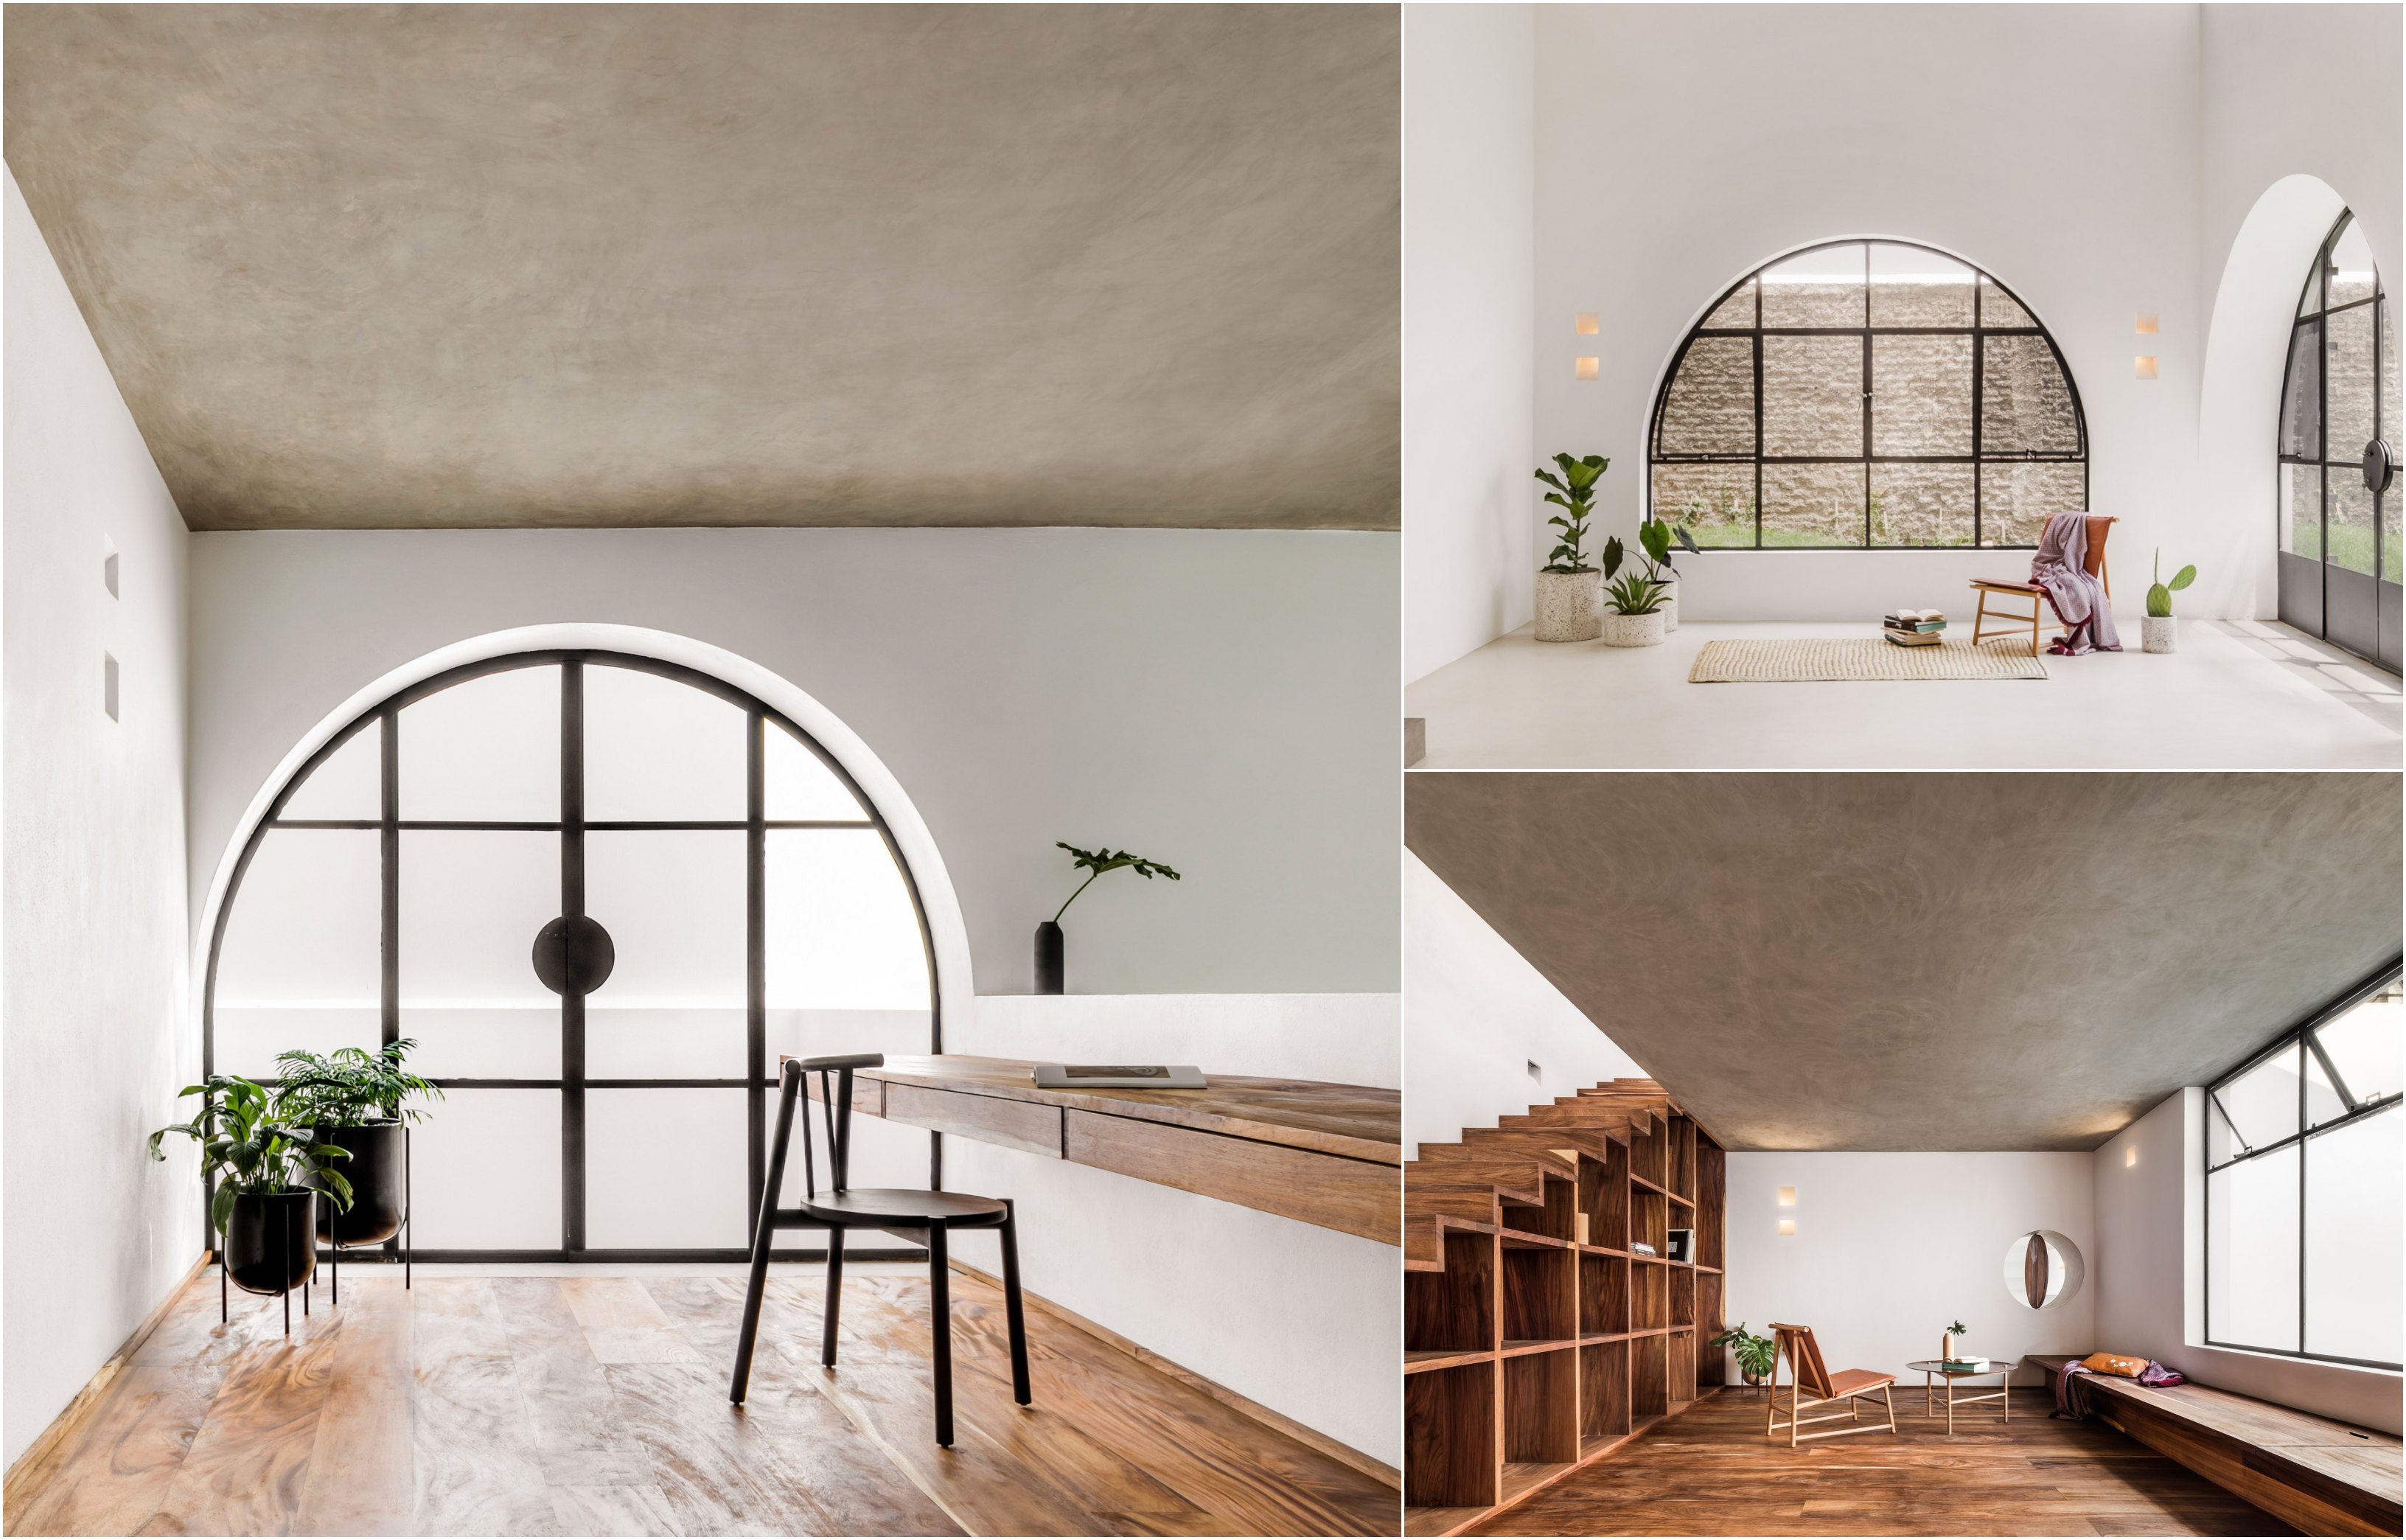 Casa A690 Dezeen's top 10 home interiors of 2020